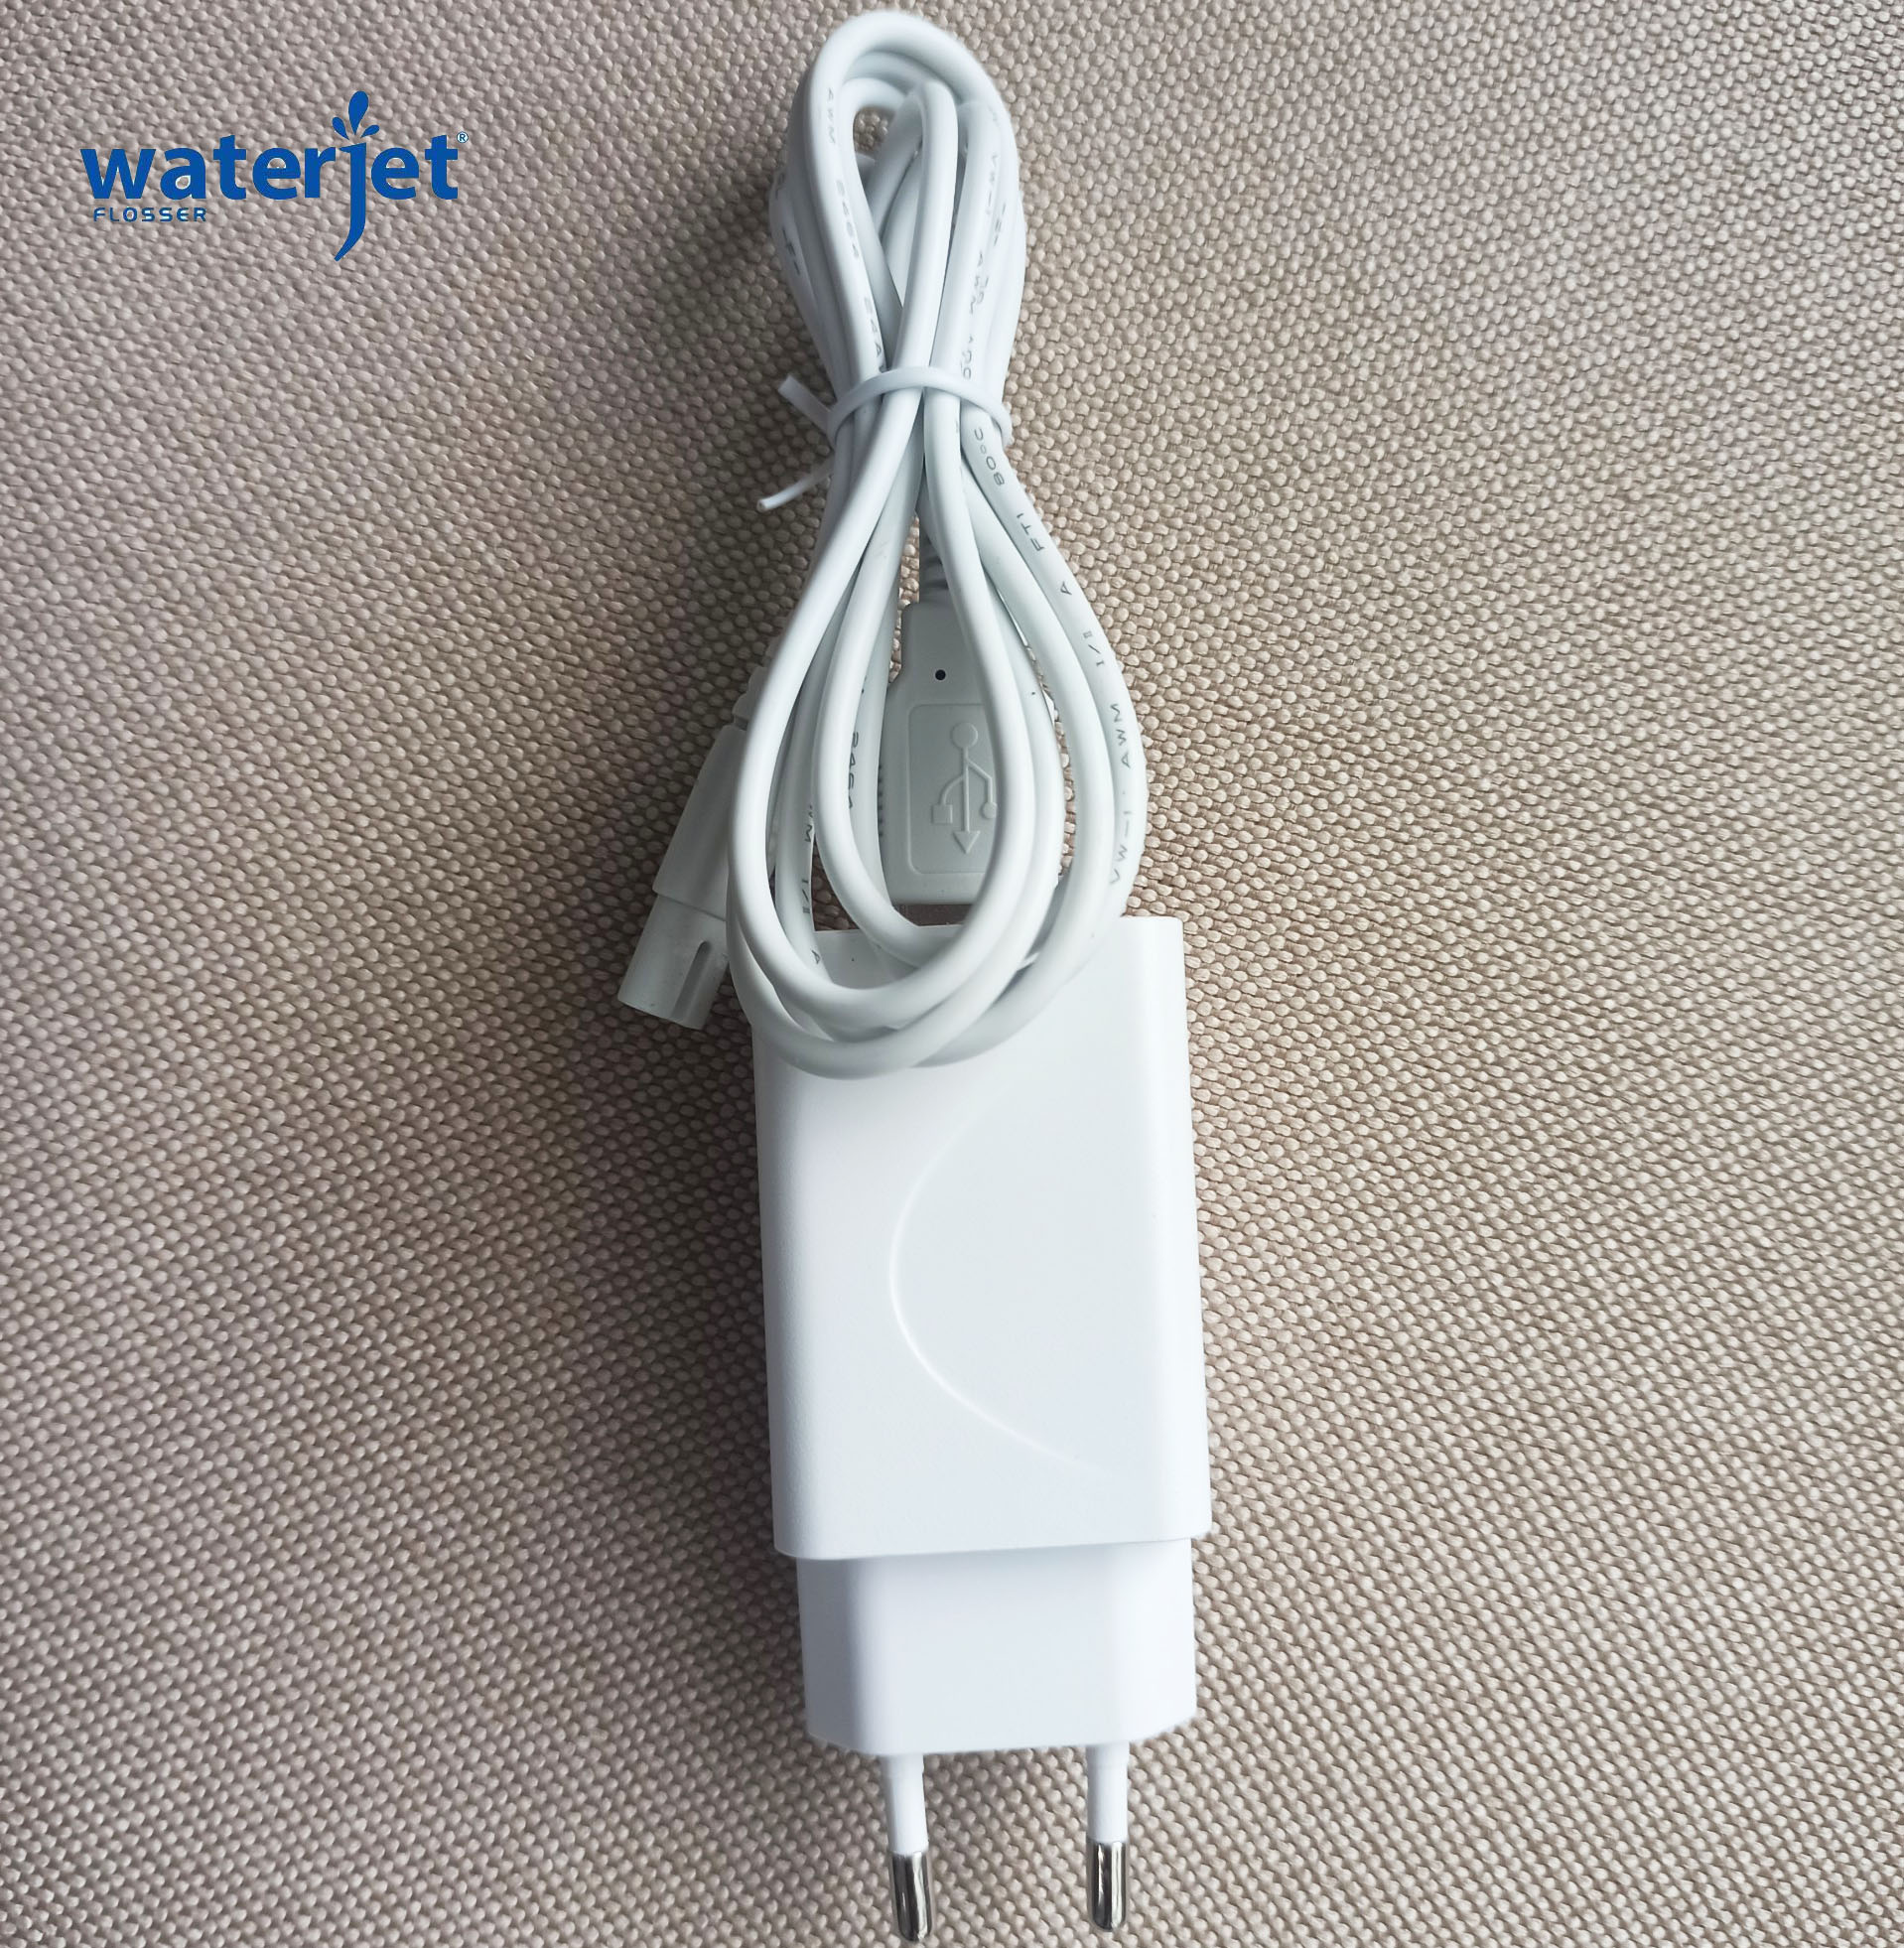 Phụ kiện - Bộ sạc chính hãng Waterjet cho máy tăm nước không dây WATERJET CORDLESS ADVANCED FLOSSER